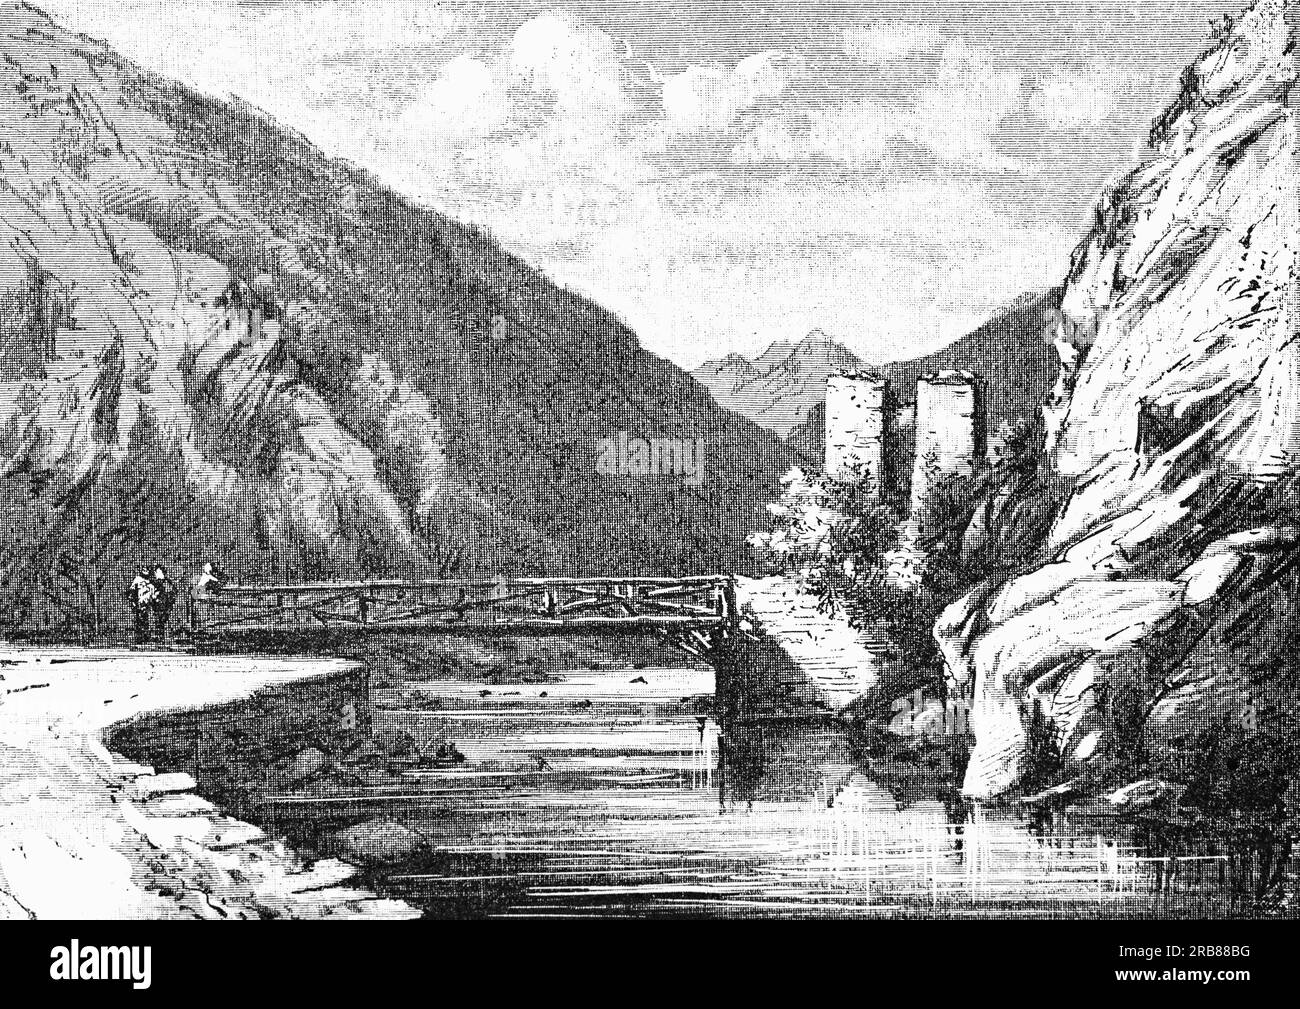 Eine Illustration aus dem späten 19. Jahrhundert der alten Pont-du-ROI oder King's Bridge, einer Grenzüberquerung über die Garonne, die das Val d'Aran in Spanien mit dem Departement Haute-Garonne in Frankreich verbindet. Stockfoto